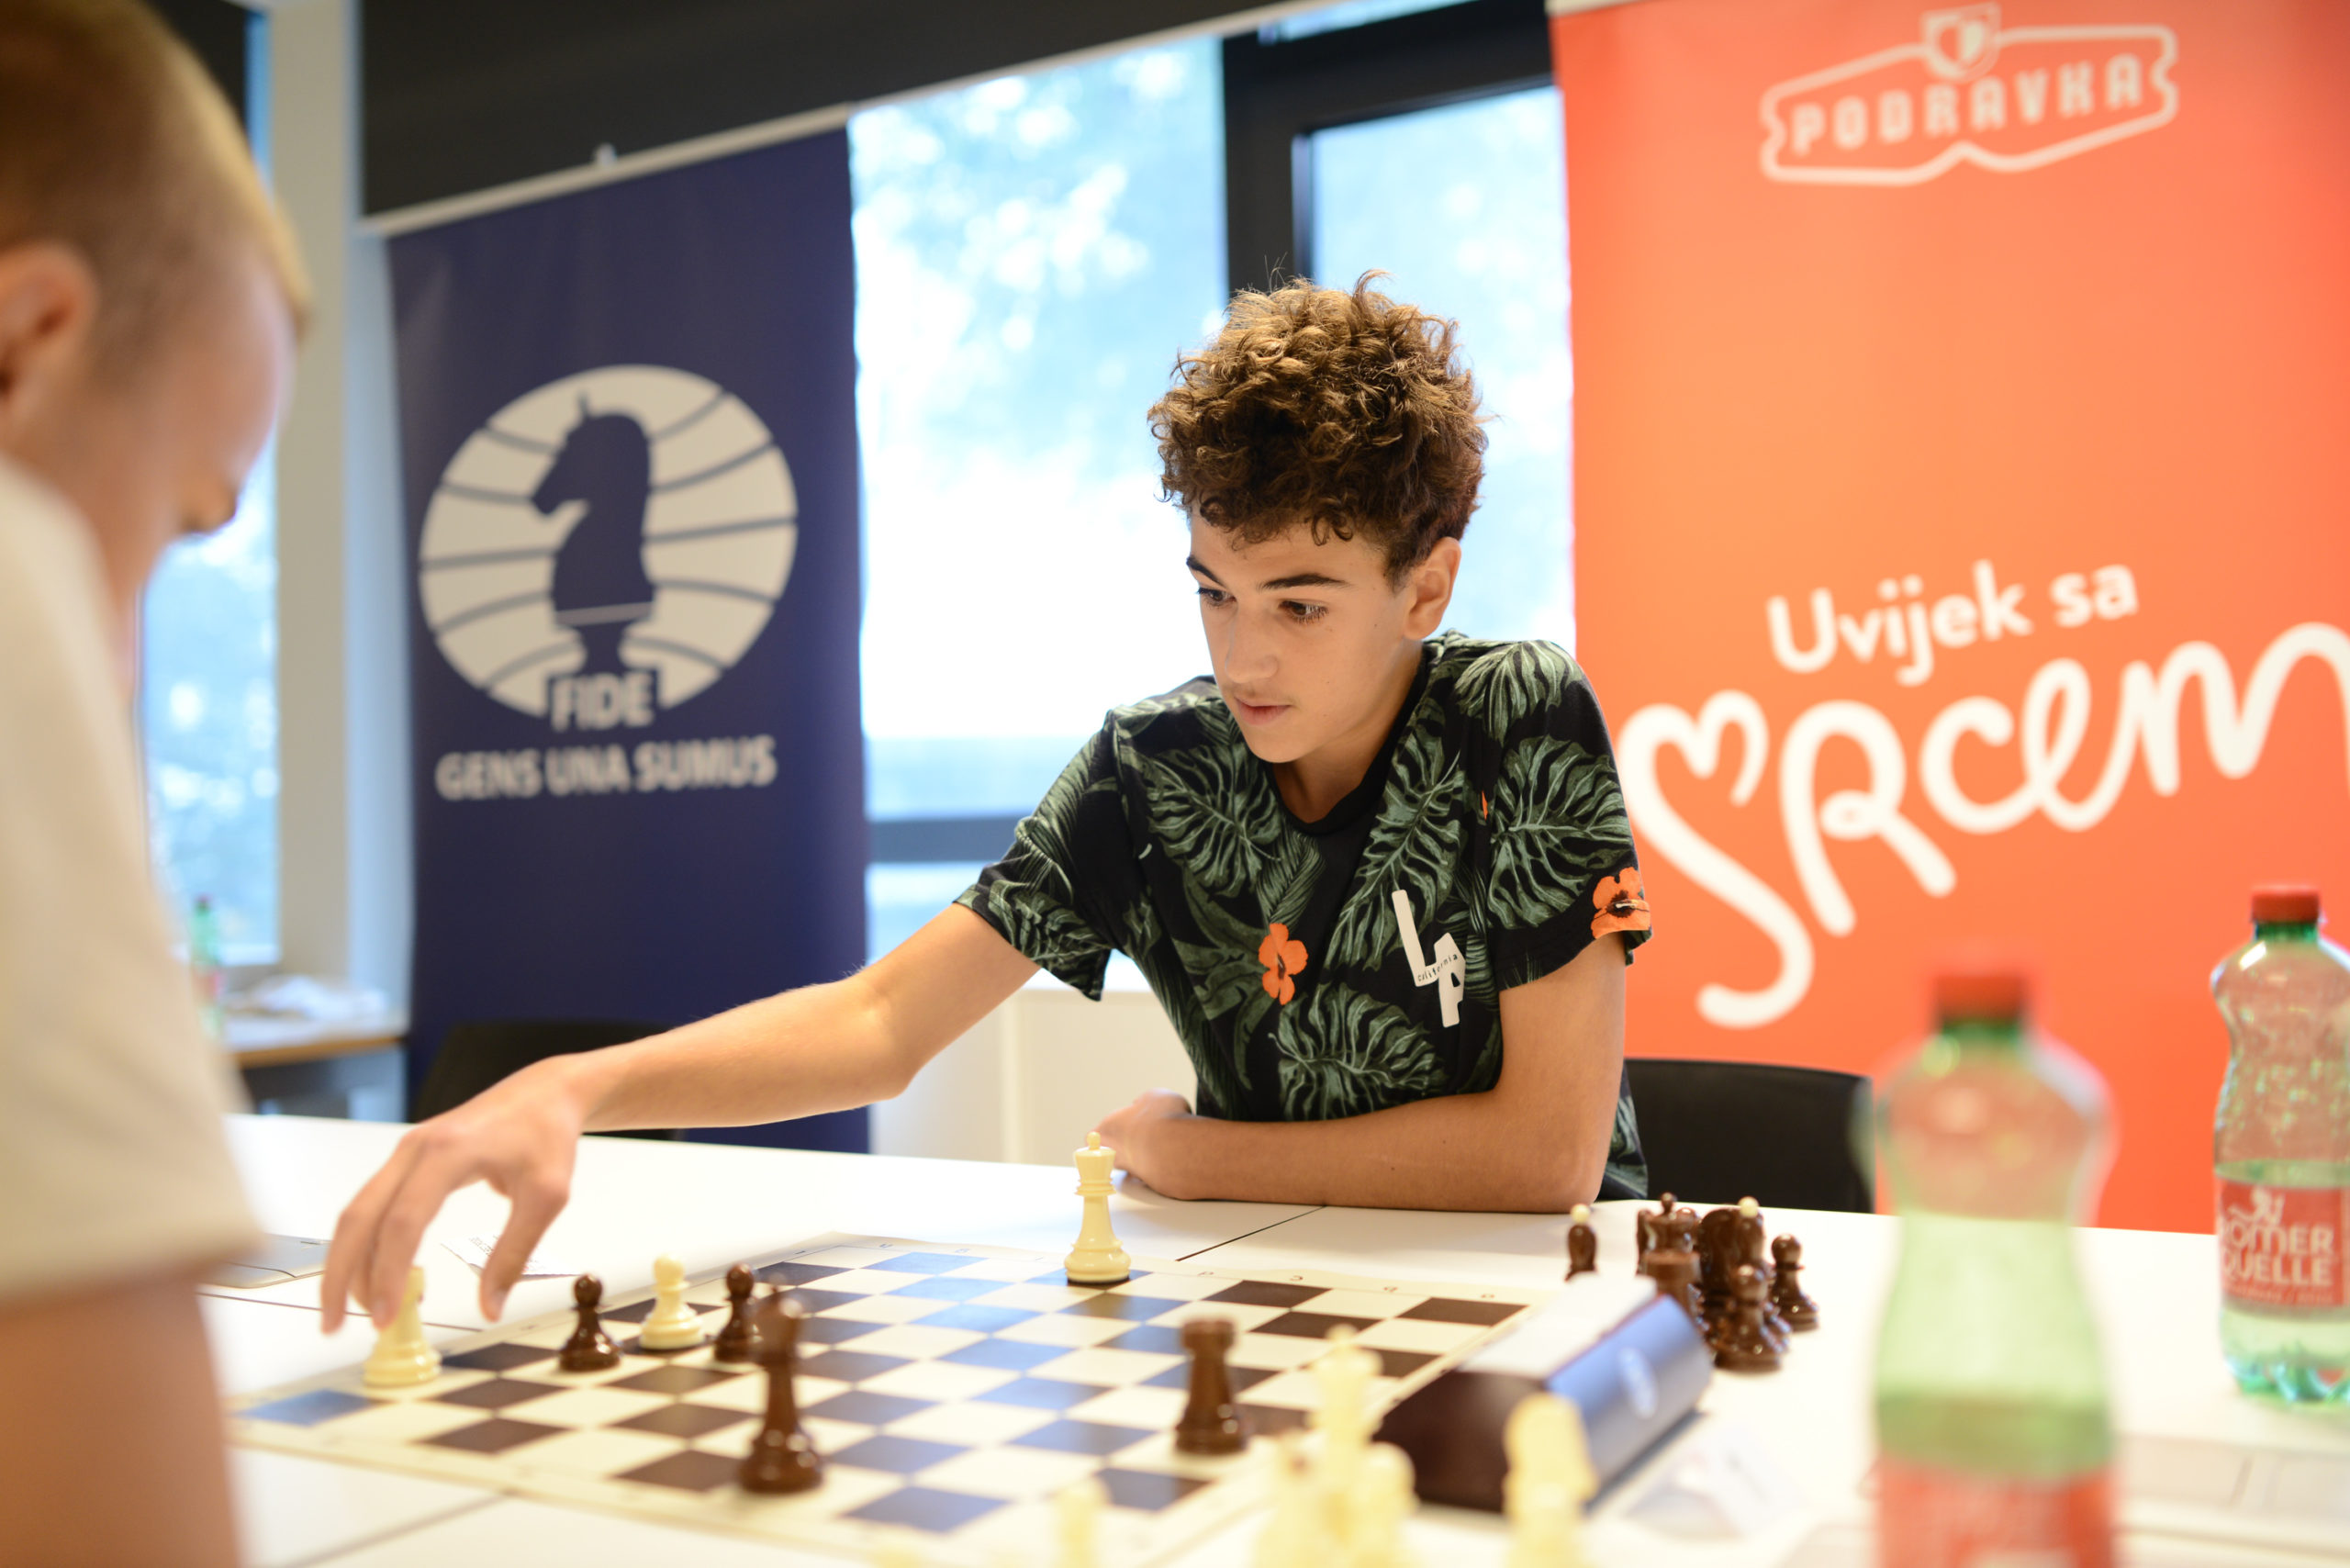 U Križevcima održano županijsko finale u šahu